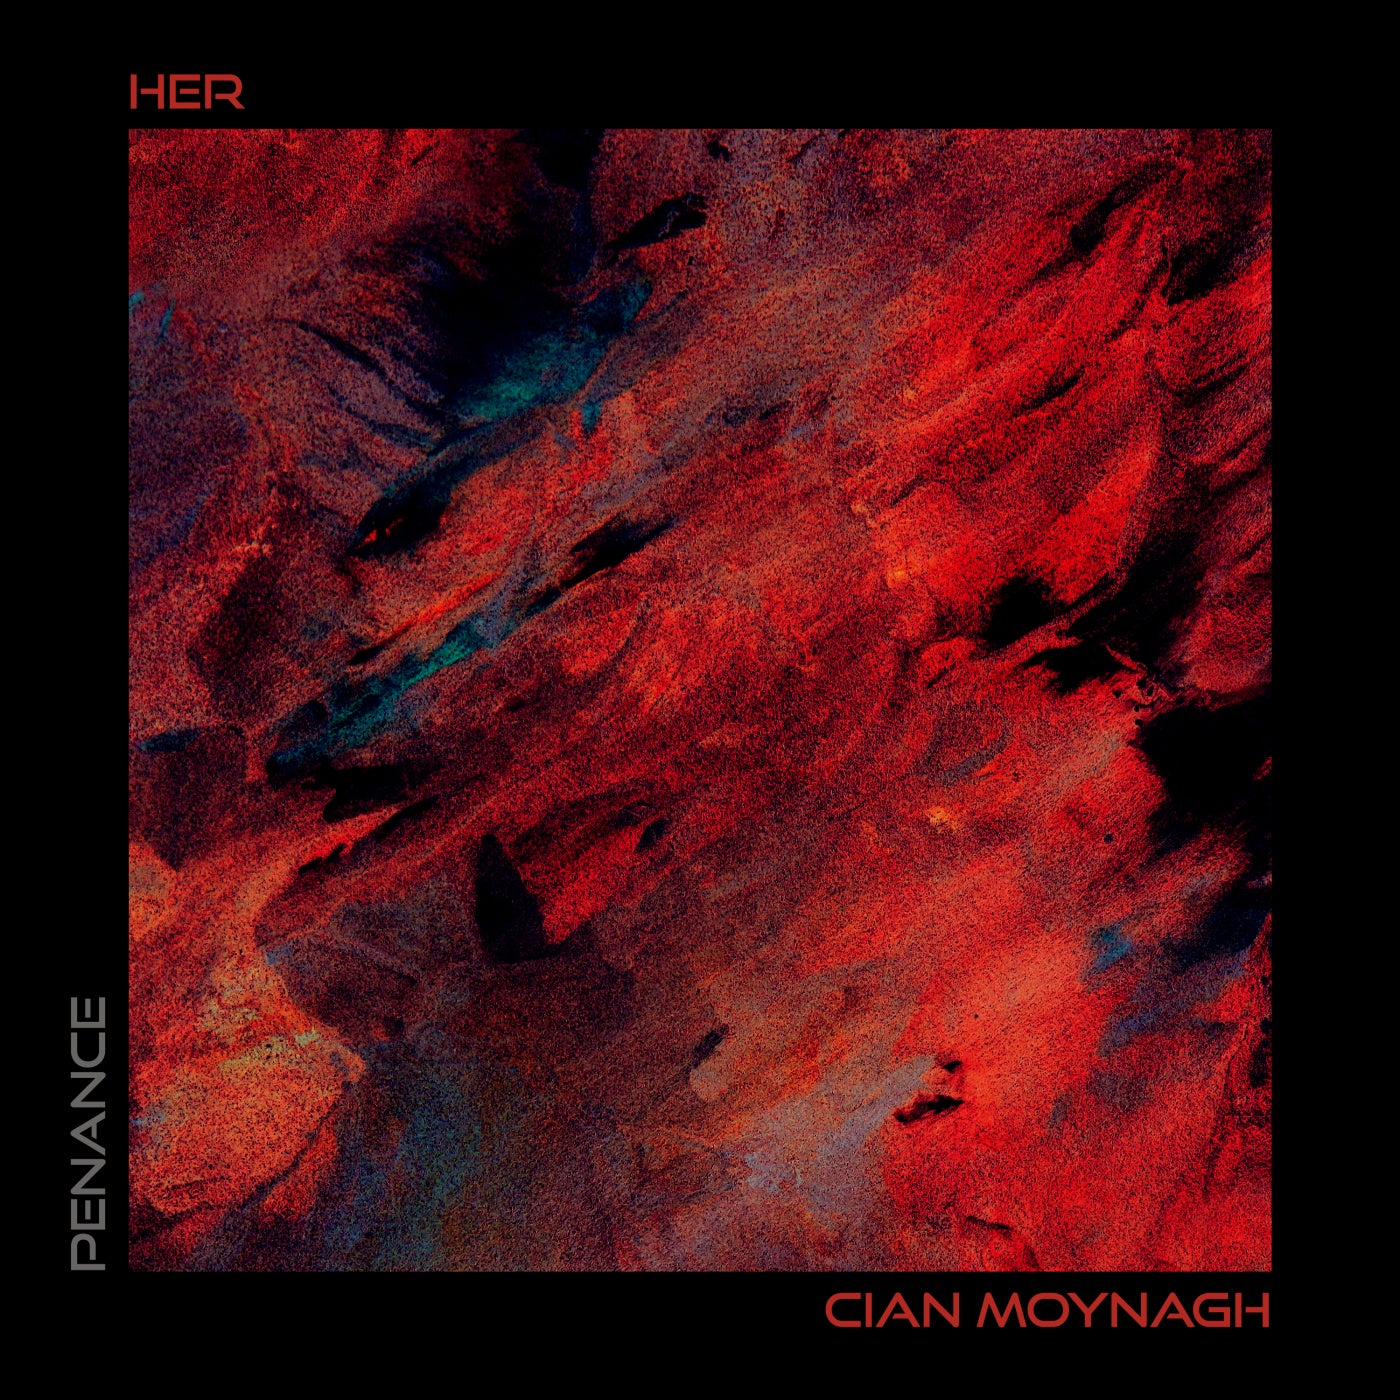 Cian Moynagh - Her feat. Sara (Original Mix)